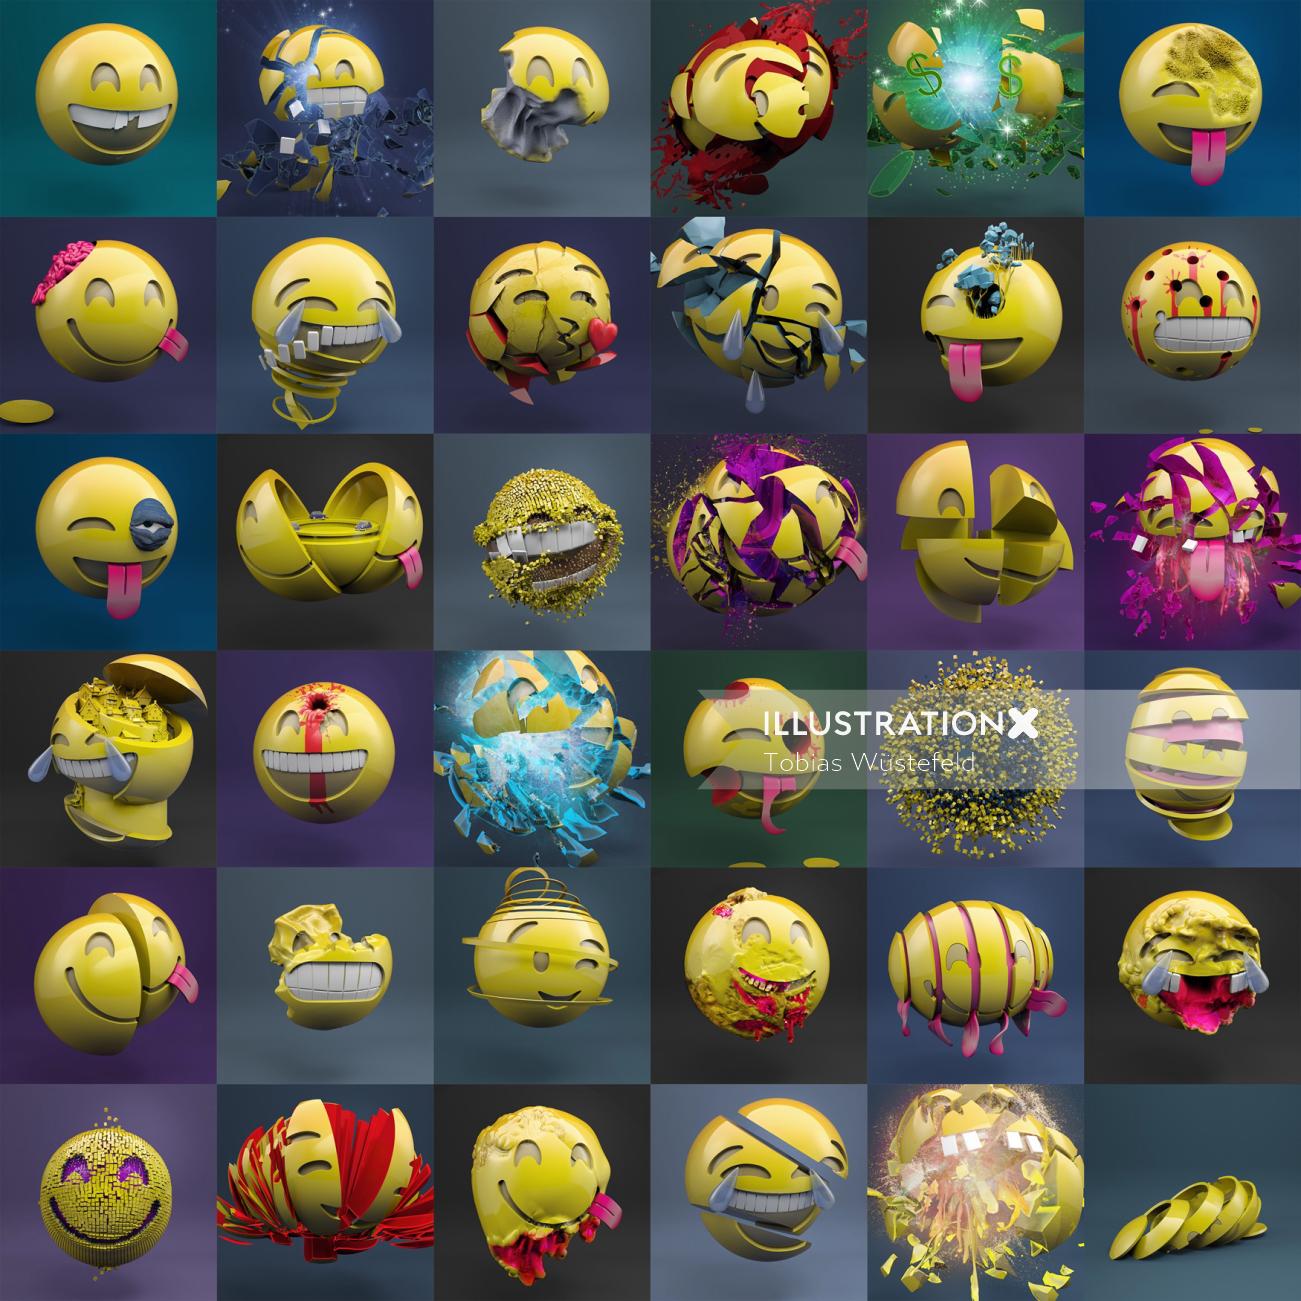 Conception des personnages des emoji